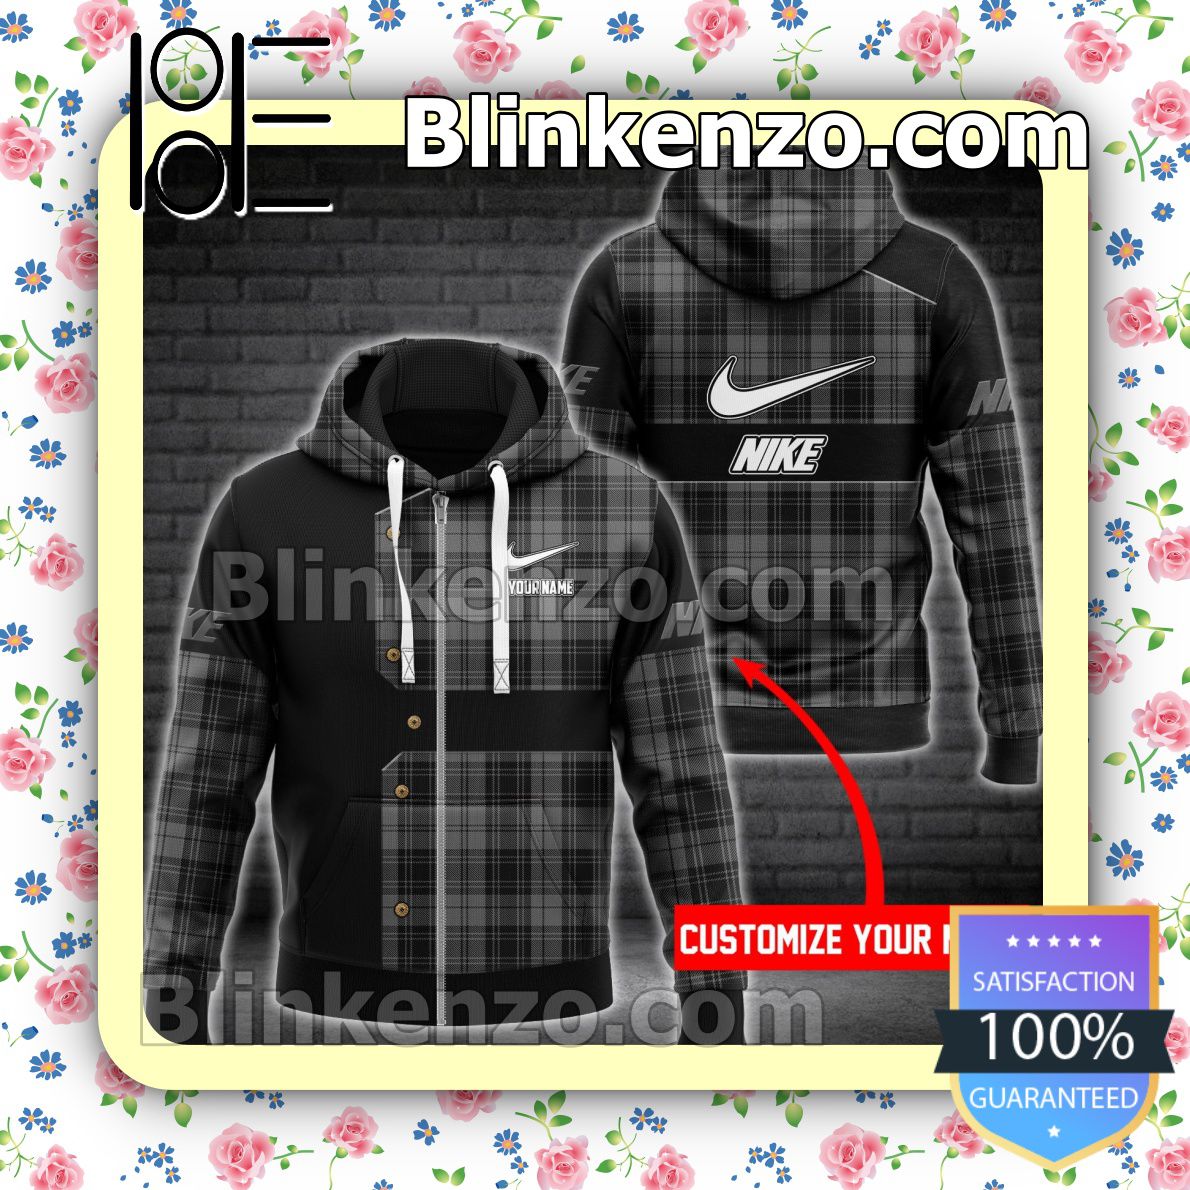 Adorable Personalized Nike Black Mix Plaid Full-Zip Hooded Fleece Sweatshirt